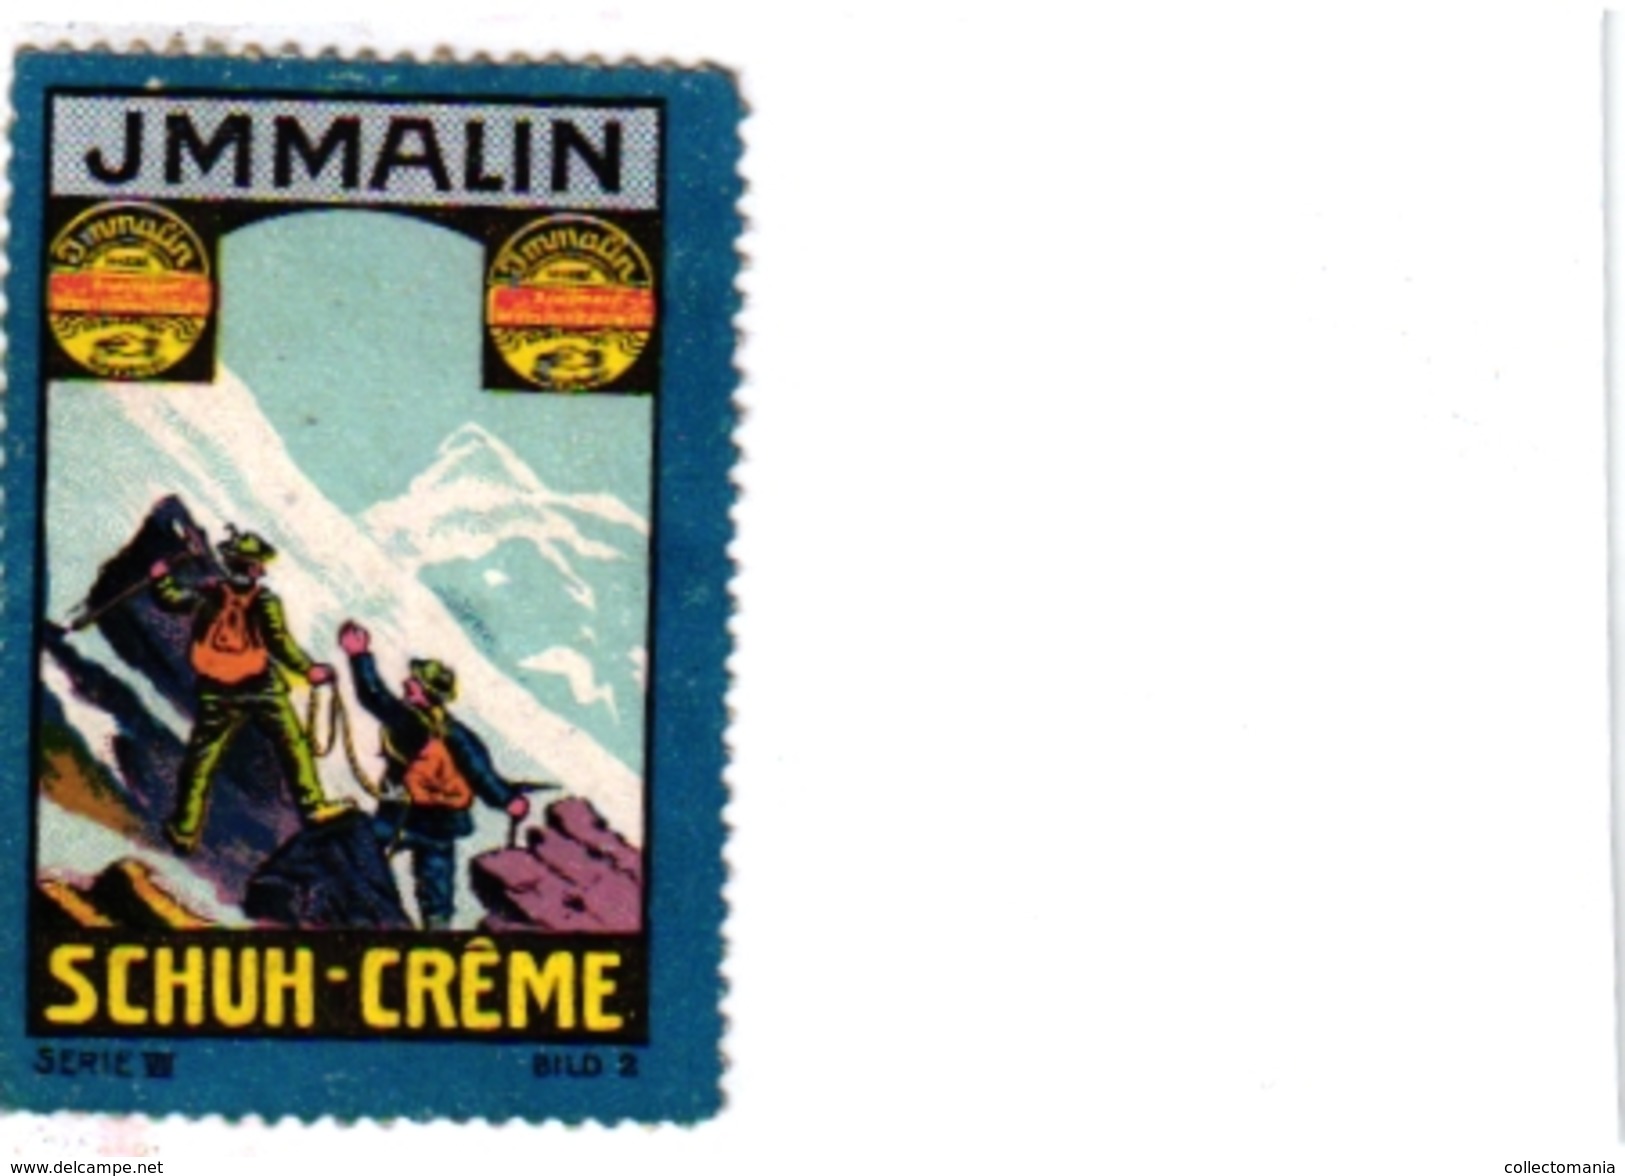 8 Poster Stamp Cinderella Reklame Marke Pub  ALPINISME Mountaineering Skiing Montagne =gebirgte Berg Climbing Klimmen VG - Invierno